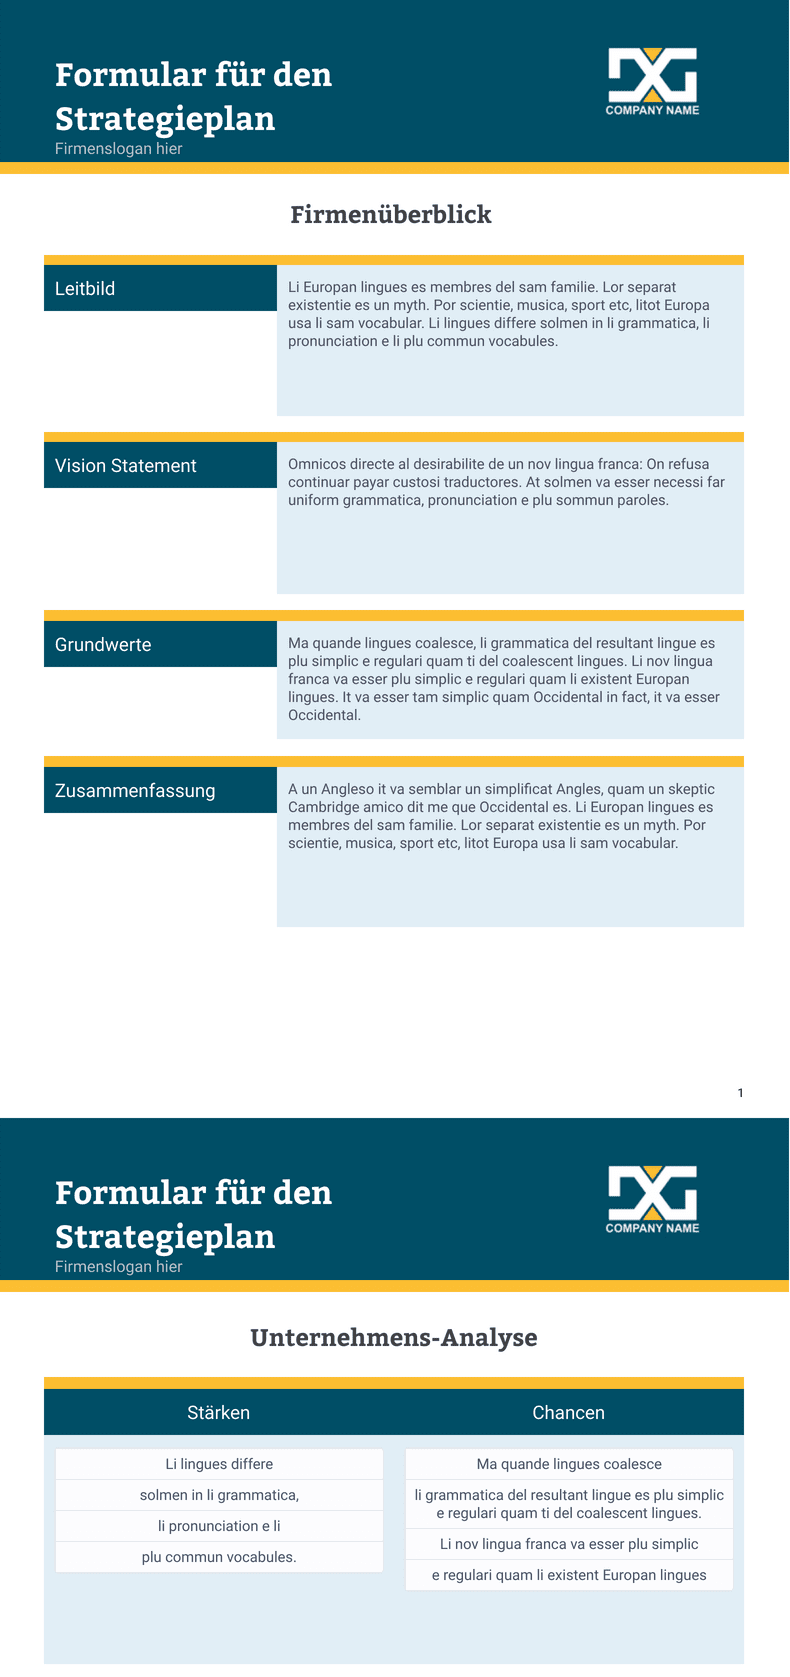 PDF Templates: Vorlage für ein Formular für den Strategieplan